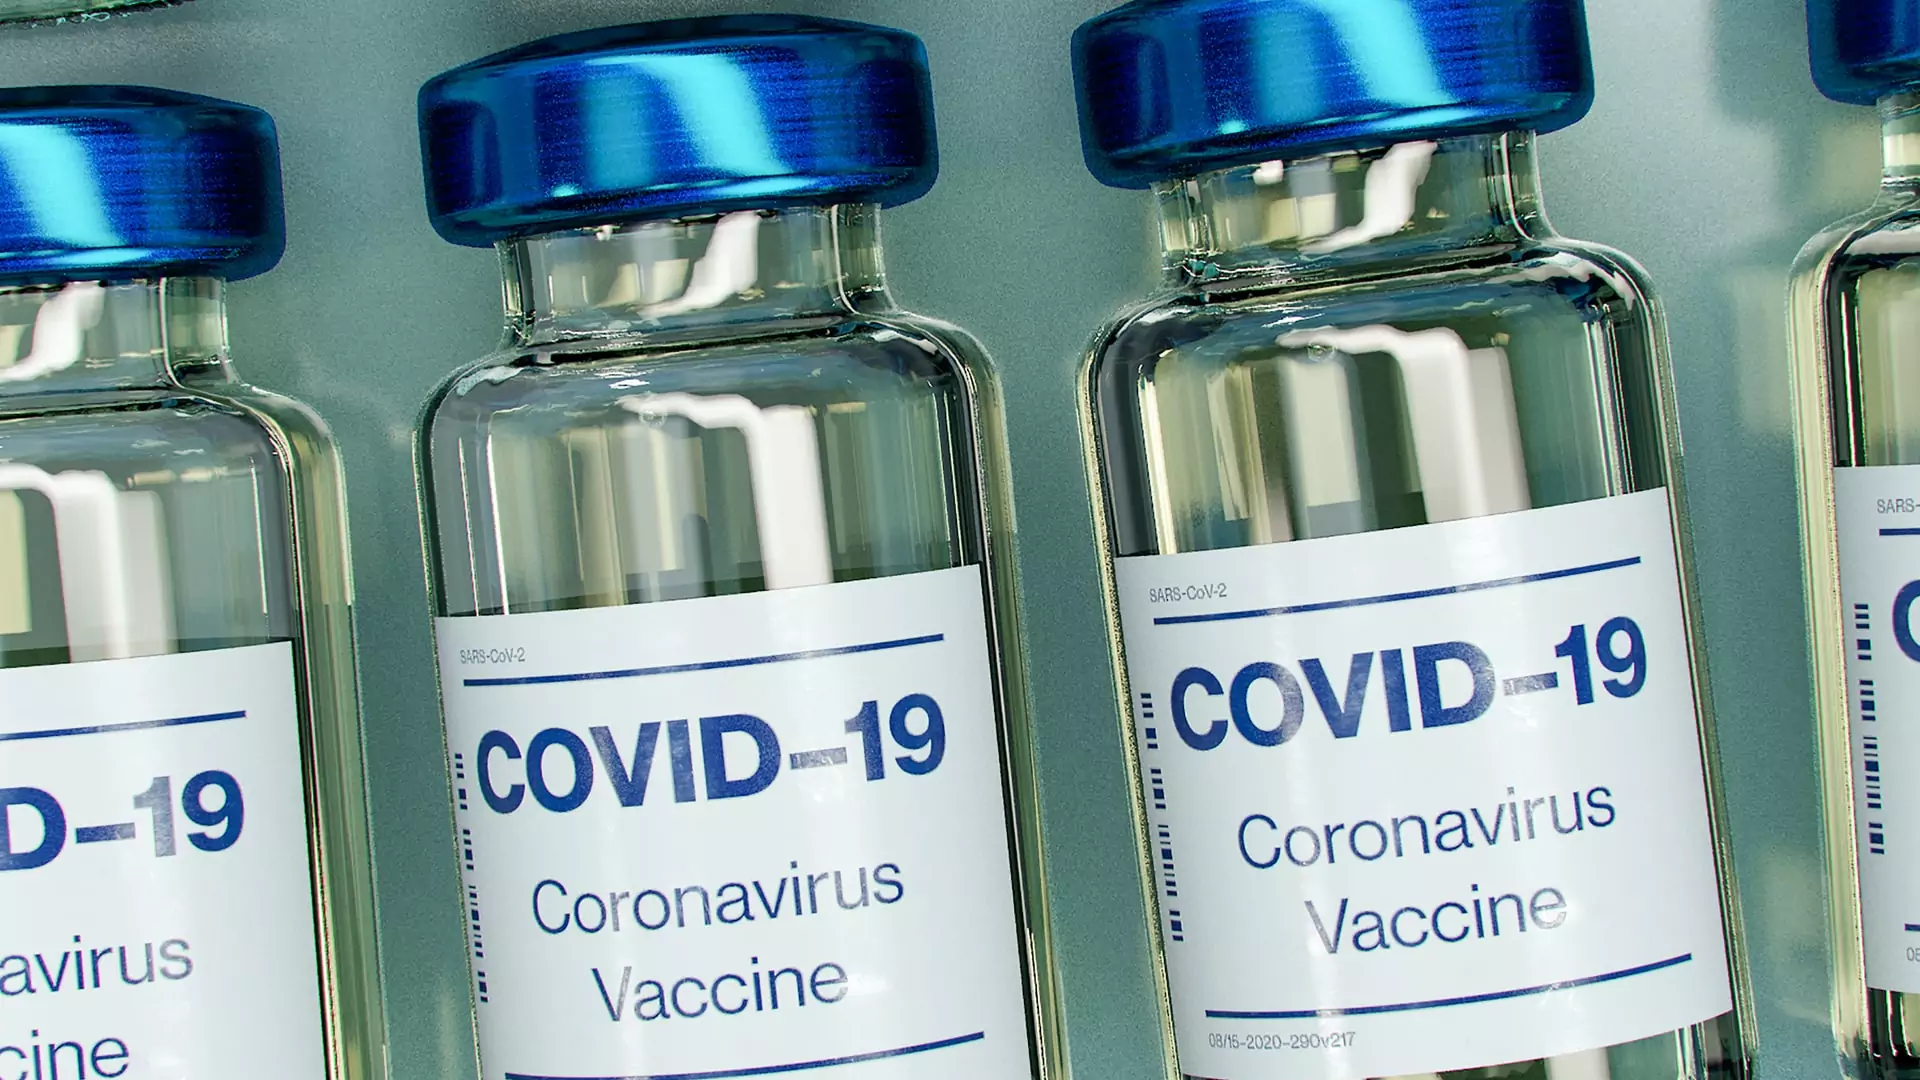 Koronawirus: przywileje dla osób zaszczepionych. Jest projekt